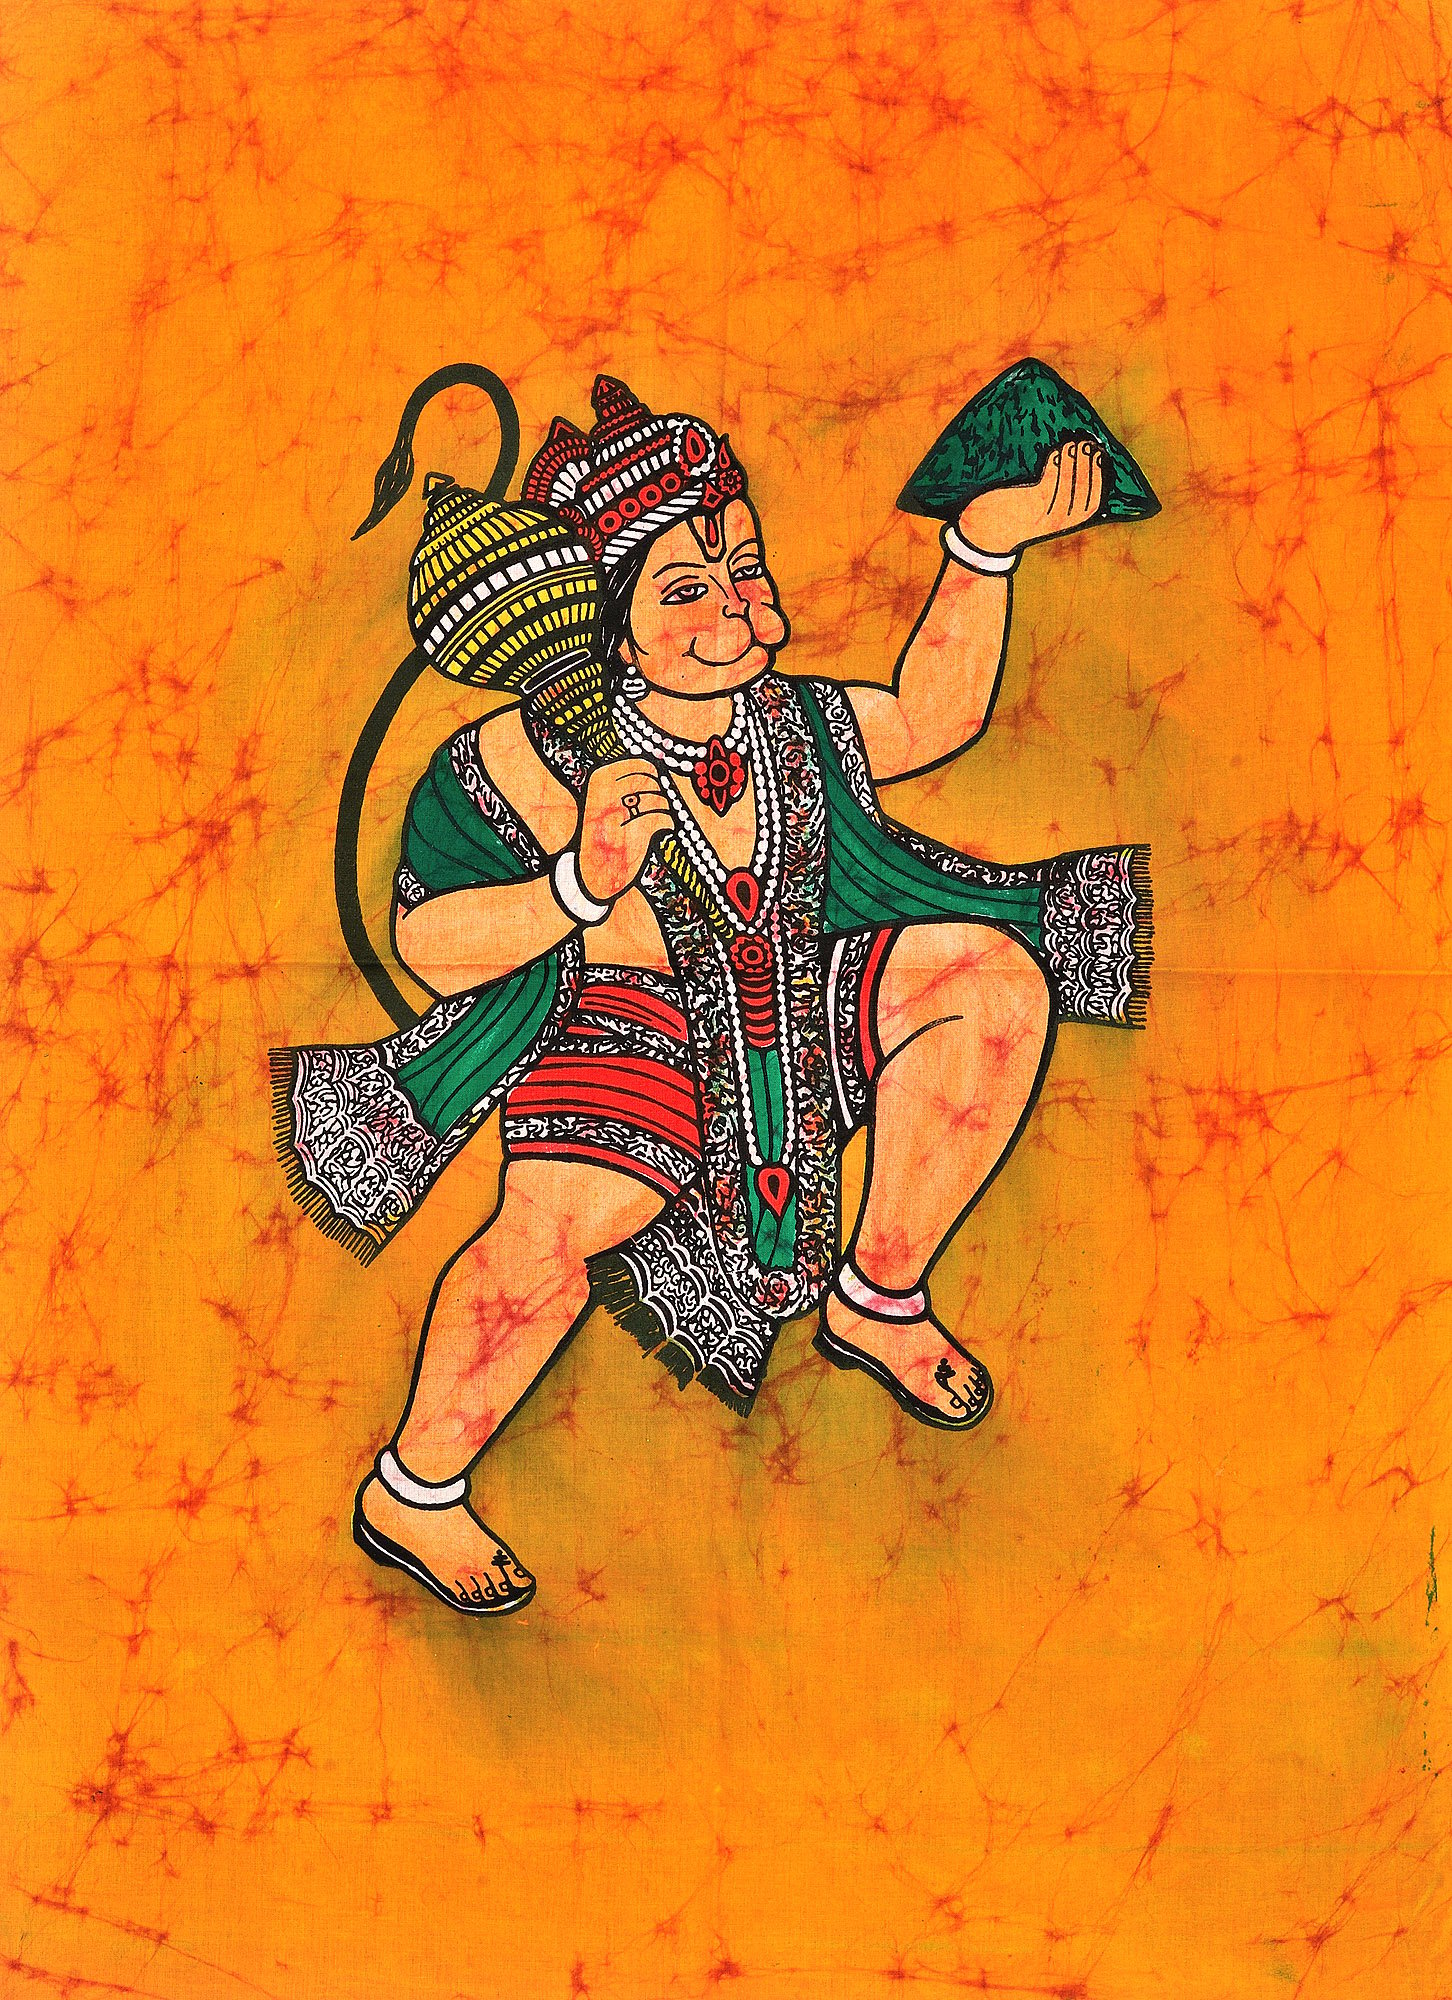 panchmukhi Lord hanuman hd wallpaper for mobile | panchmukhi… | Flickr